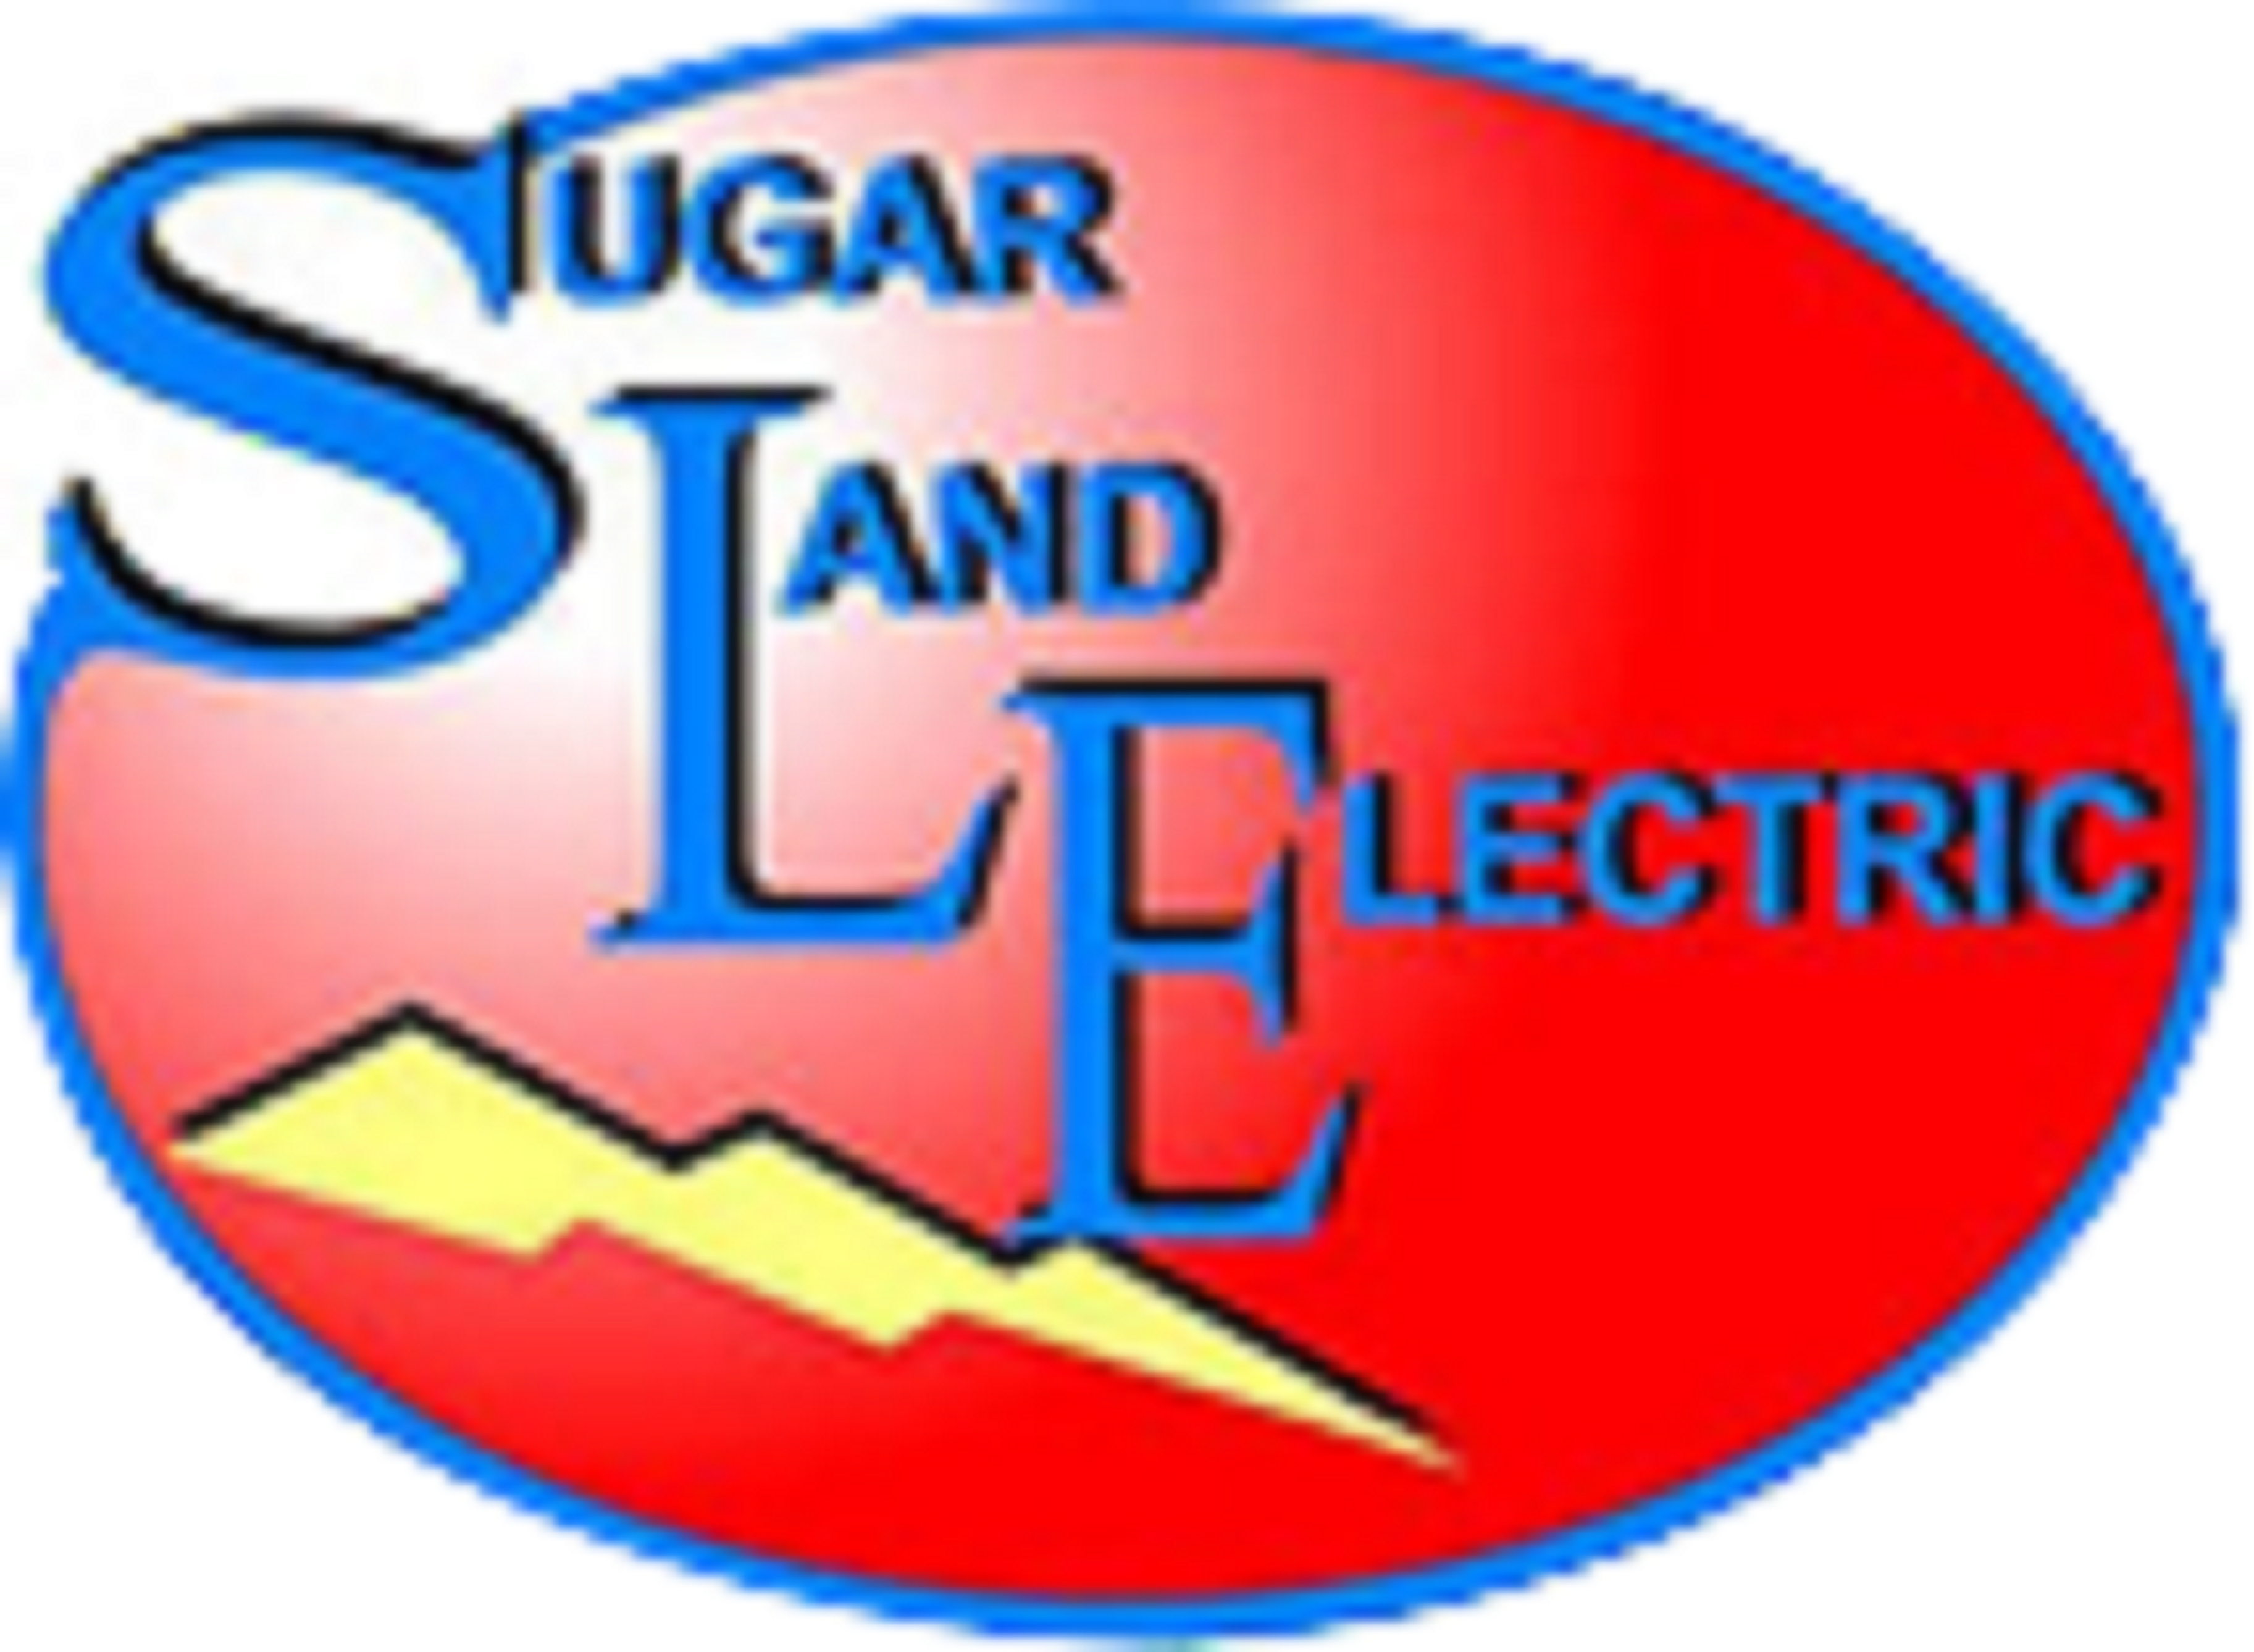 Sugar Land Electric LLC